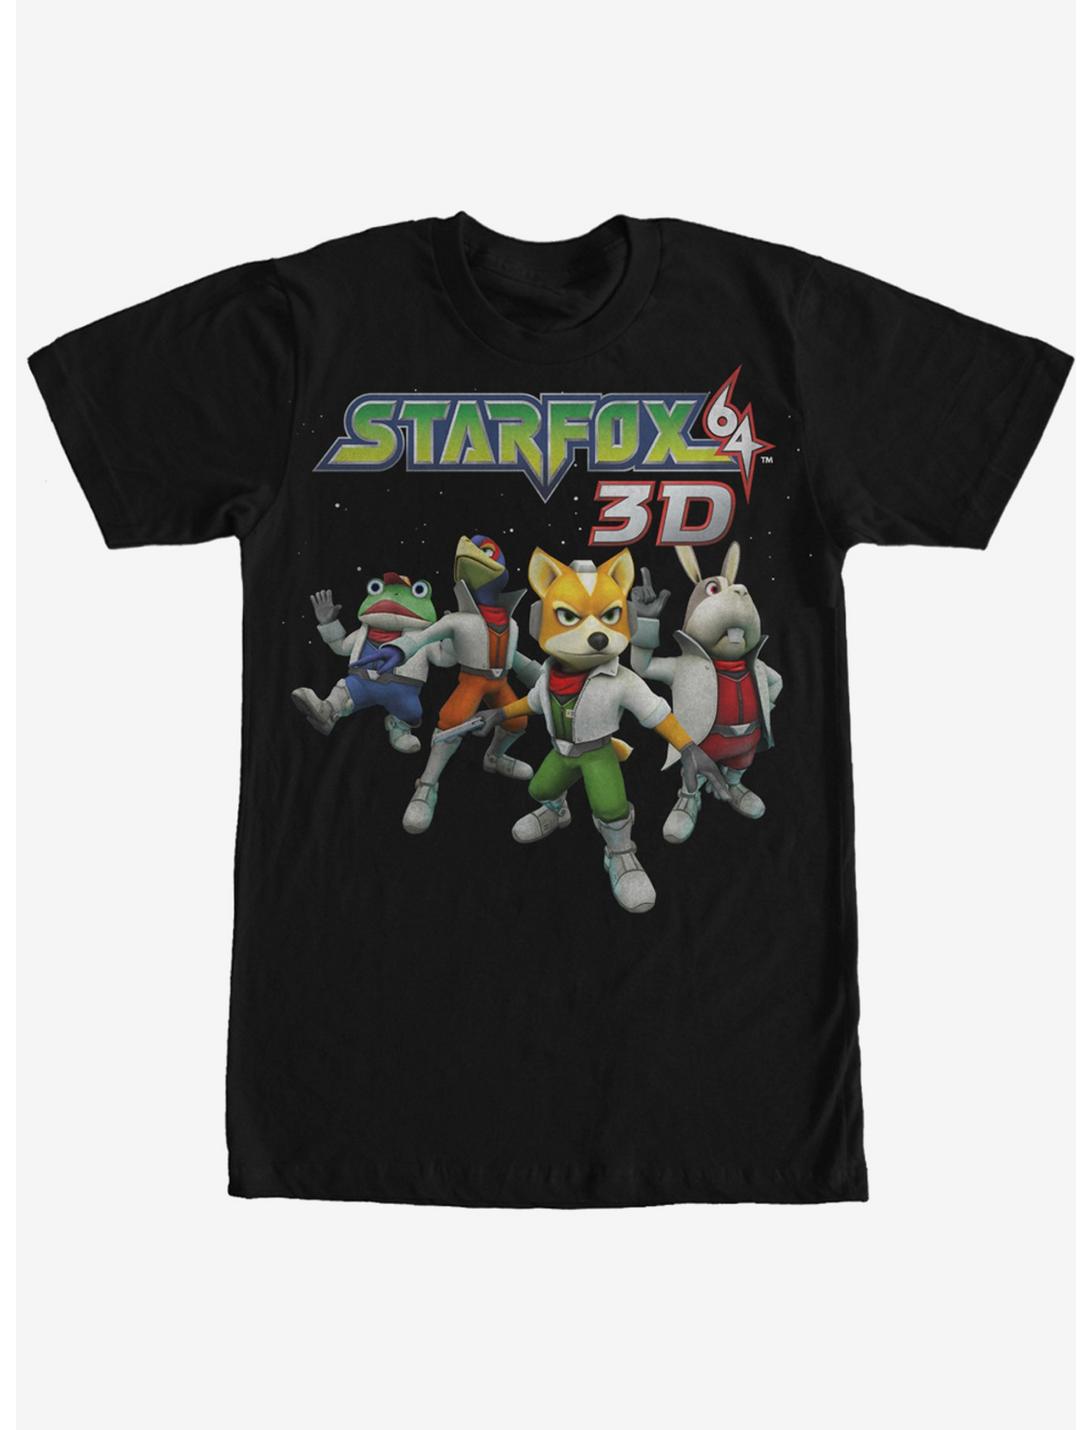 Nintendo Star Fox 64 3D Characters T-Shirt, BLACK, hi-res